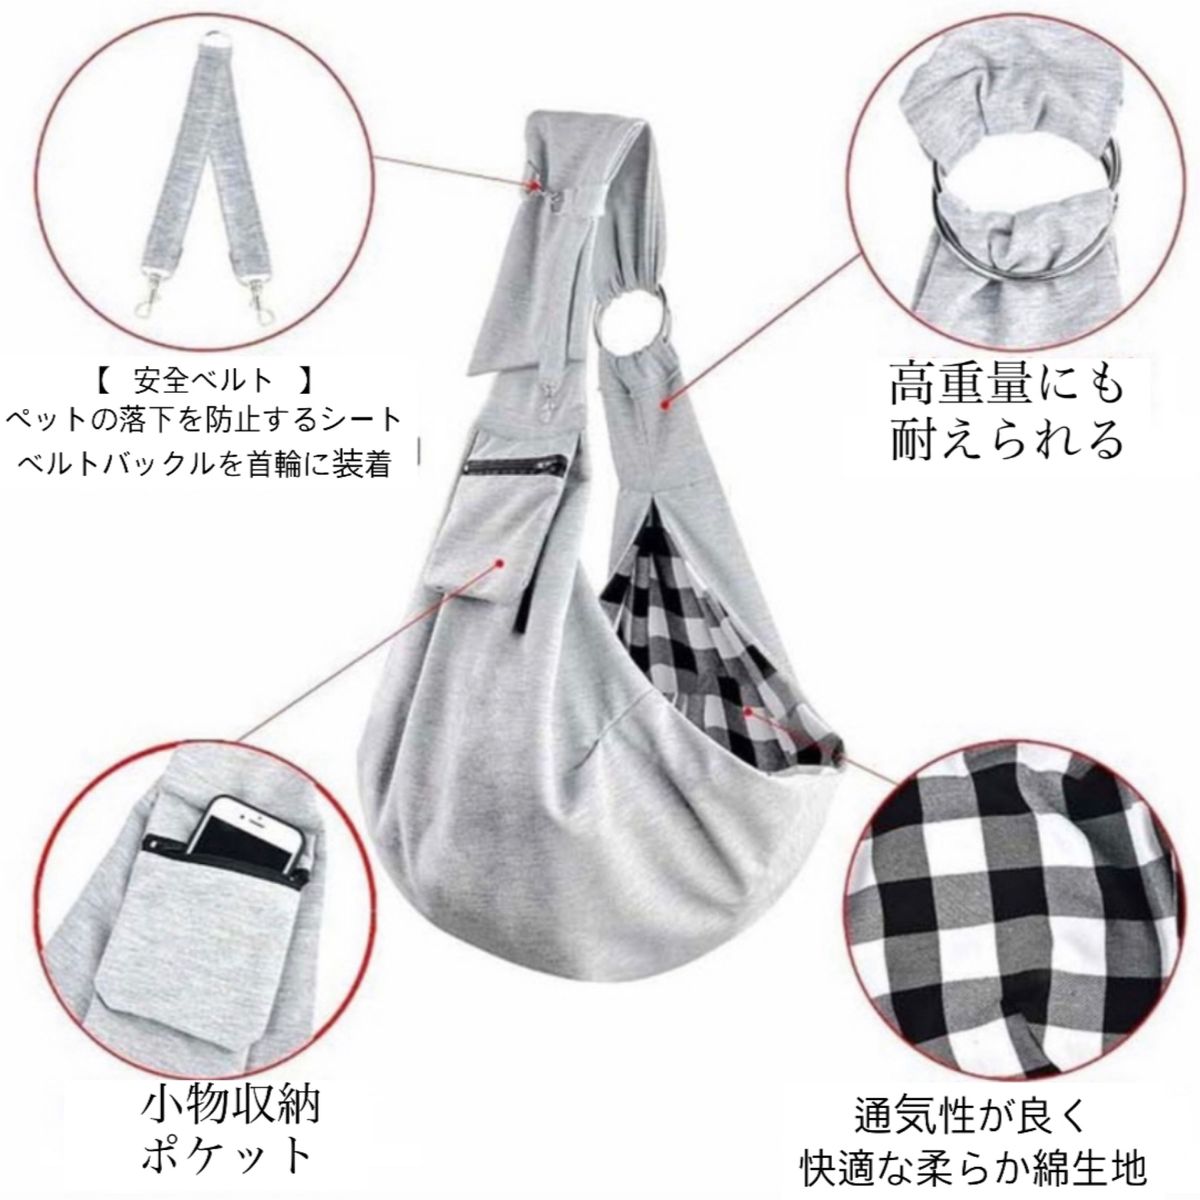 【新品】ペット用スリングバッグ 犬用バッグ 洗濯可能 リバーシブルタイプ